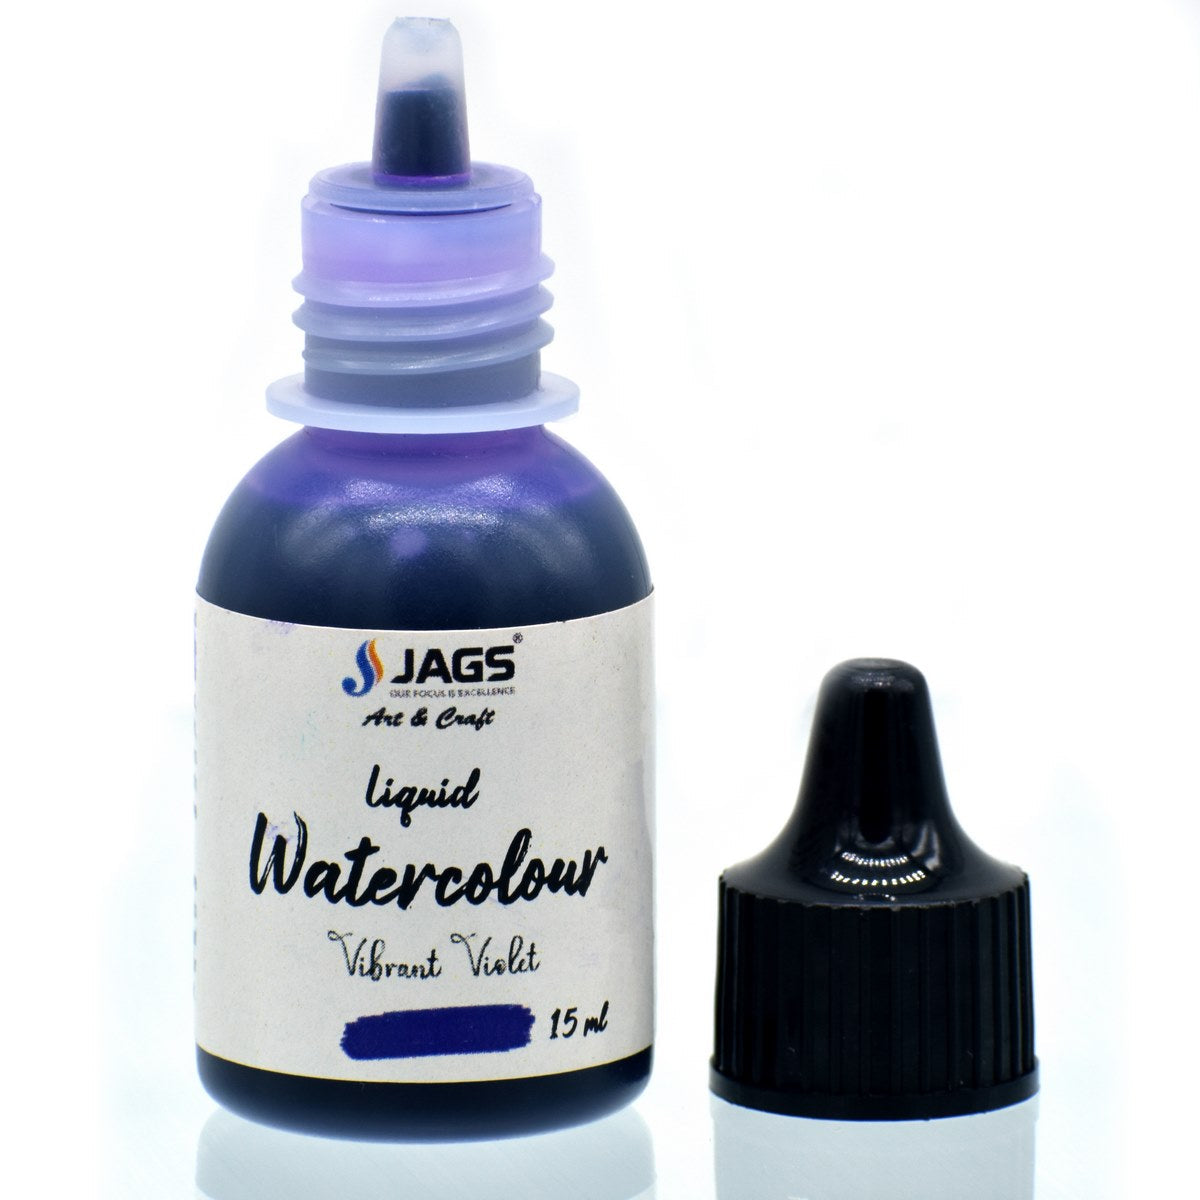 jags-mumbai Paint & Colours Jags Liquid Watercolour 15ML Vibrant Violet JLWC03